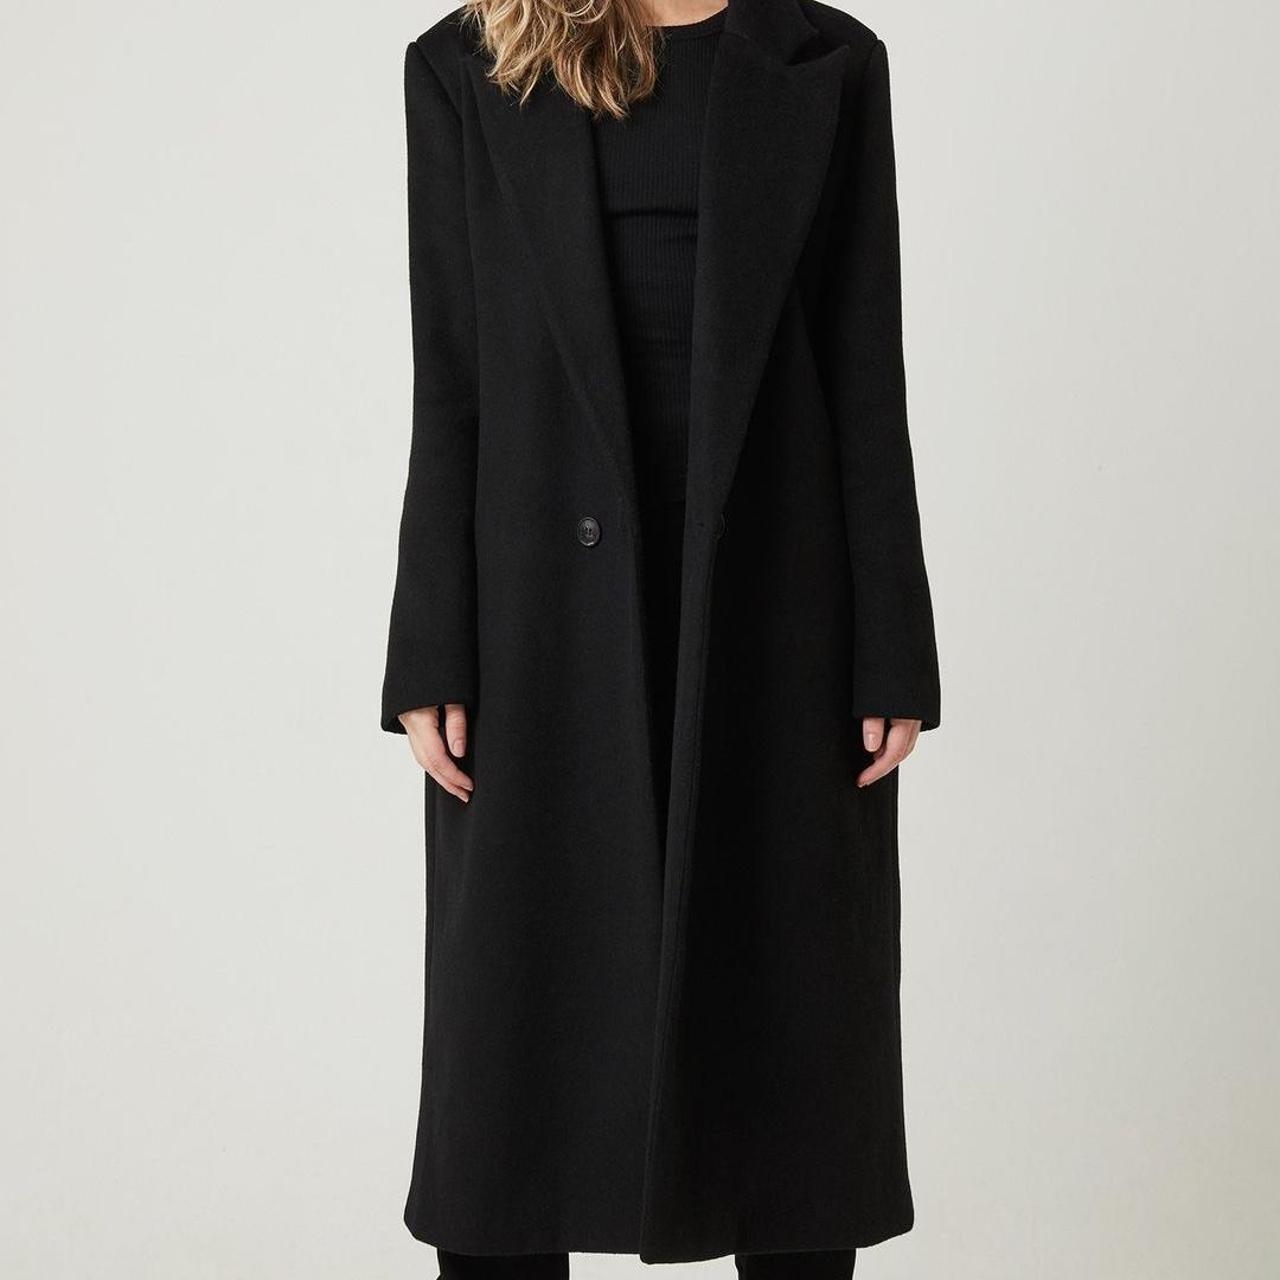 Atoir Women's Coat